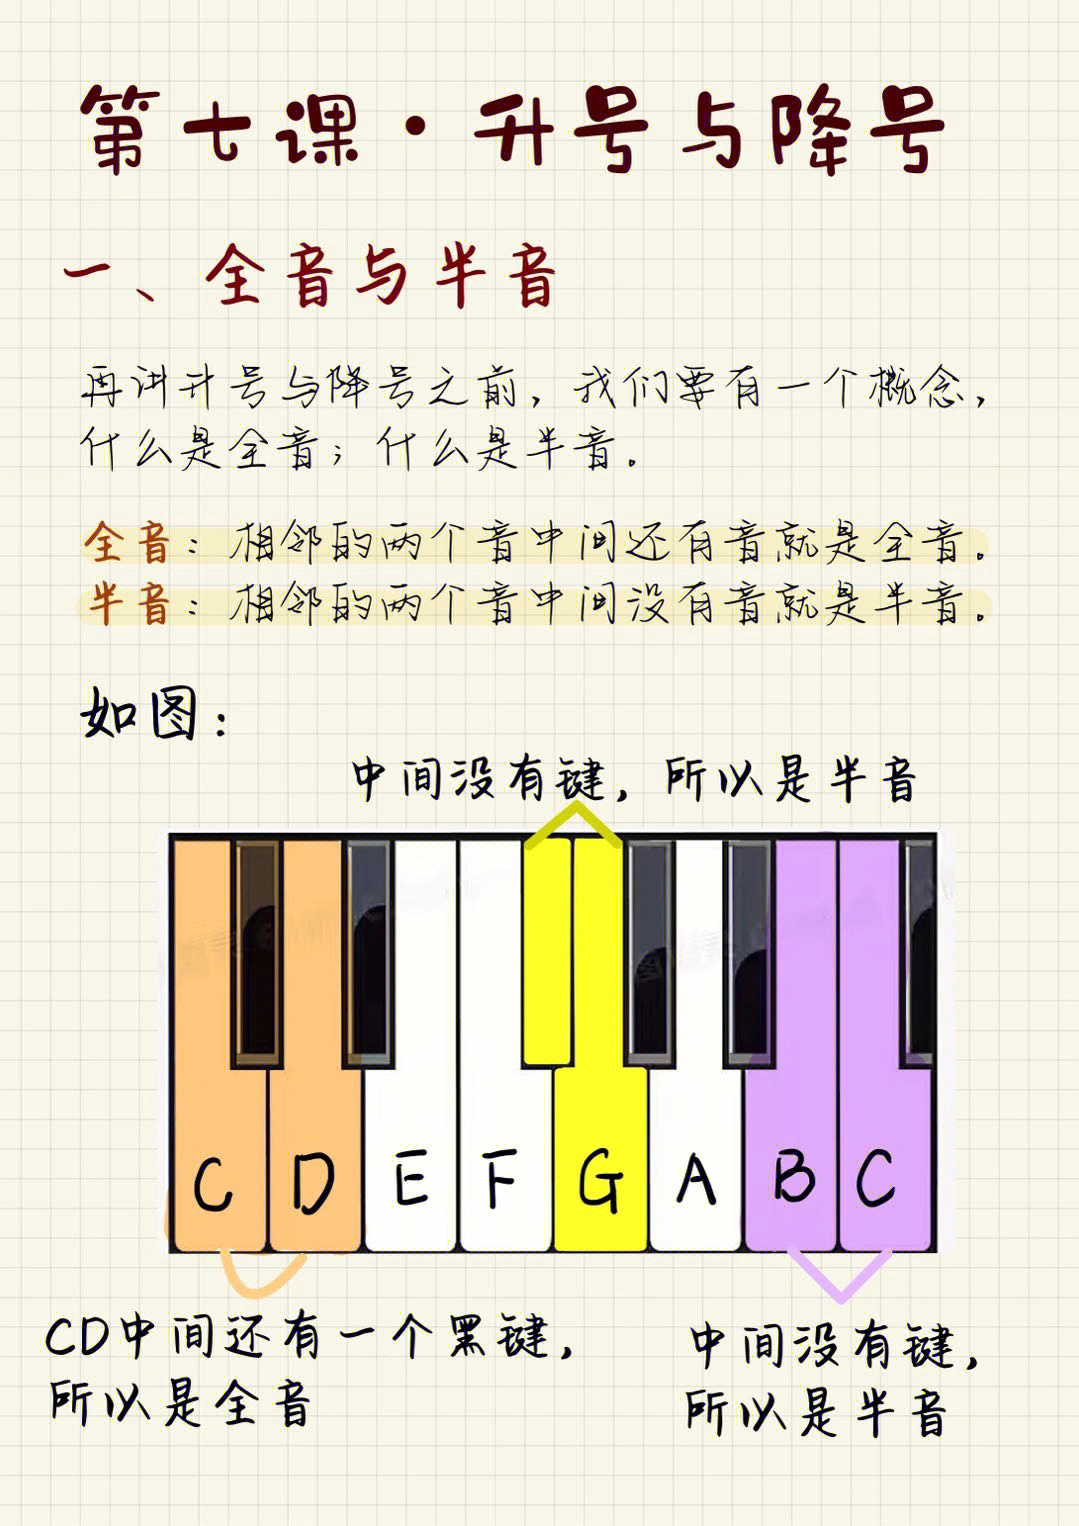 钢琴琴键音标图图片